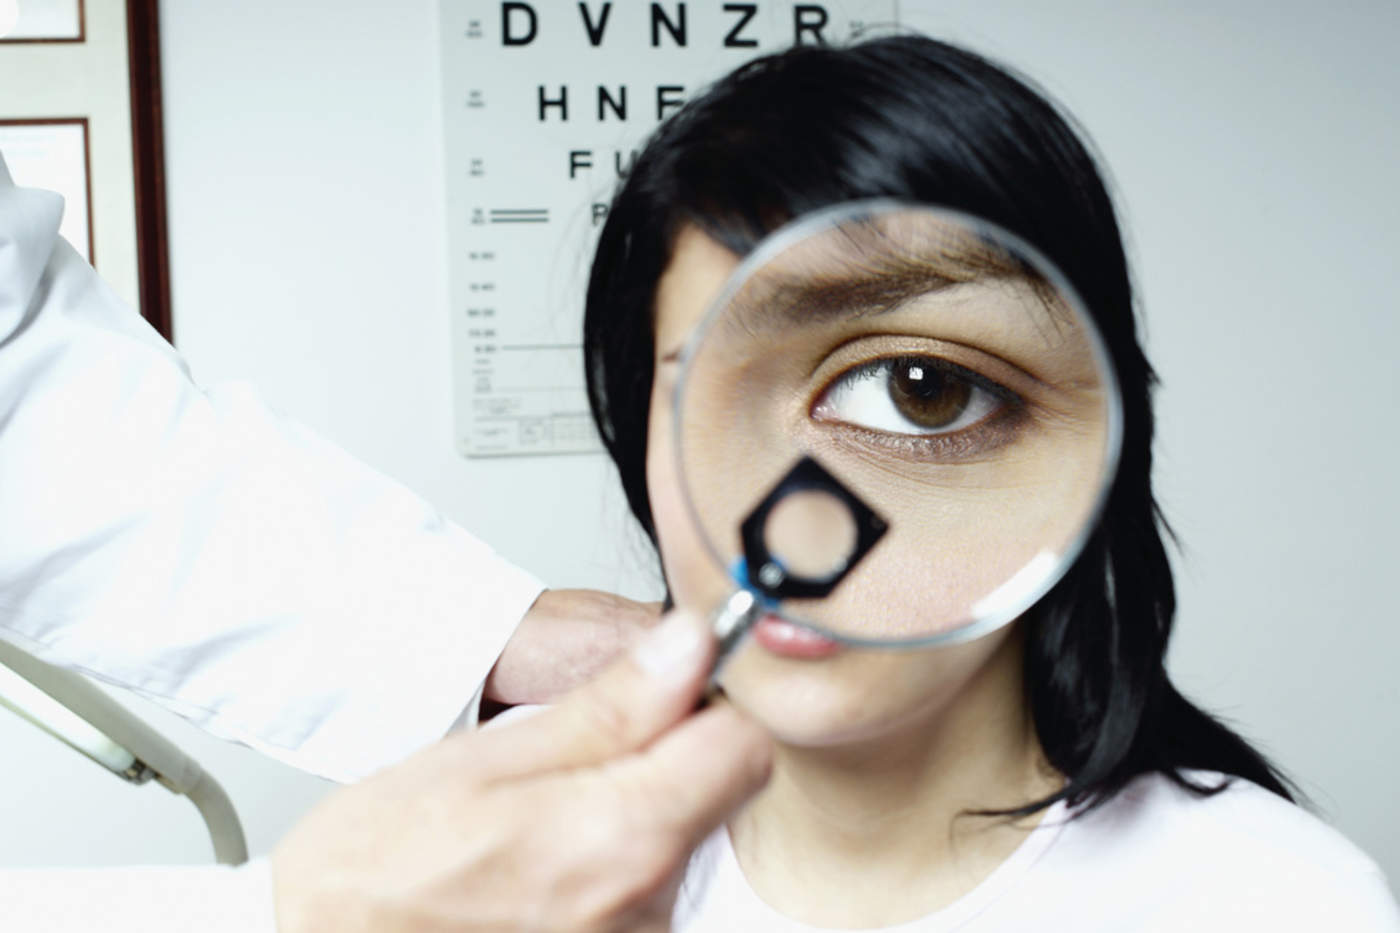 Miopía, astigmatismo, fatiga visual, son los principales problemas que se presentan con la edad y los cambios hormonales que pueden llegar a afectar su calidad de vida. (ARCHIVO)